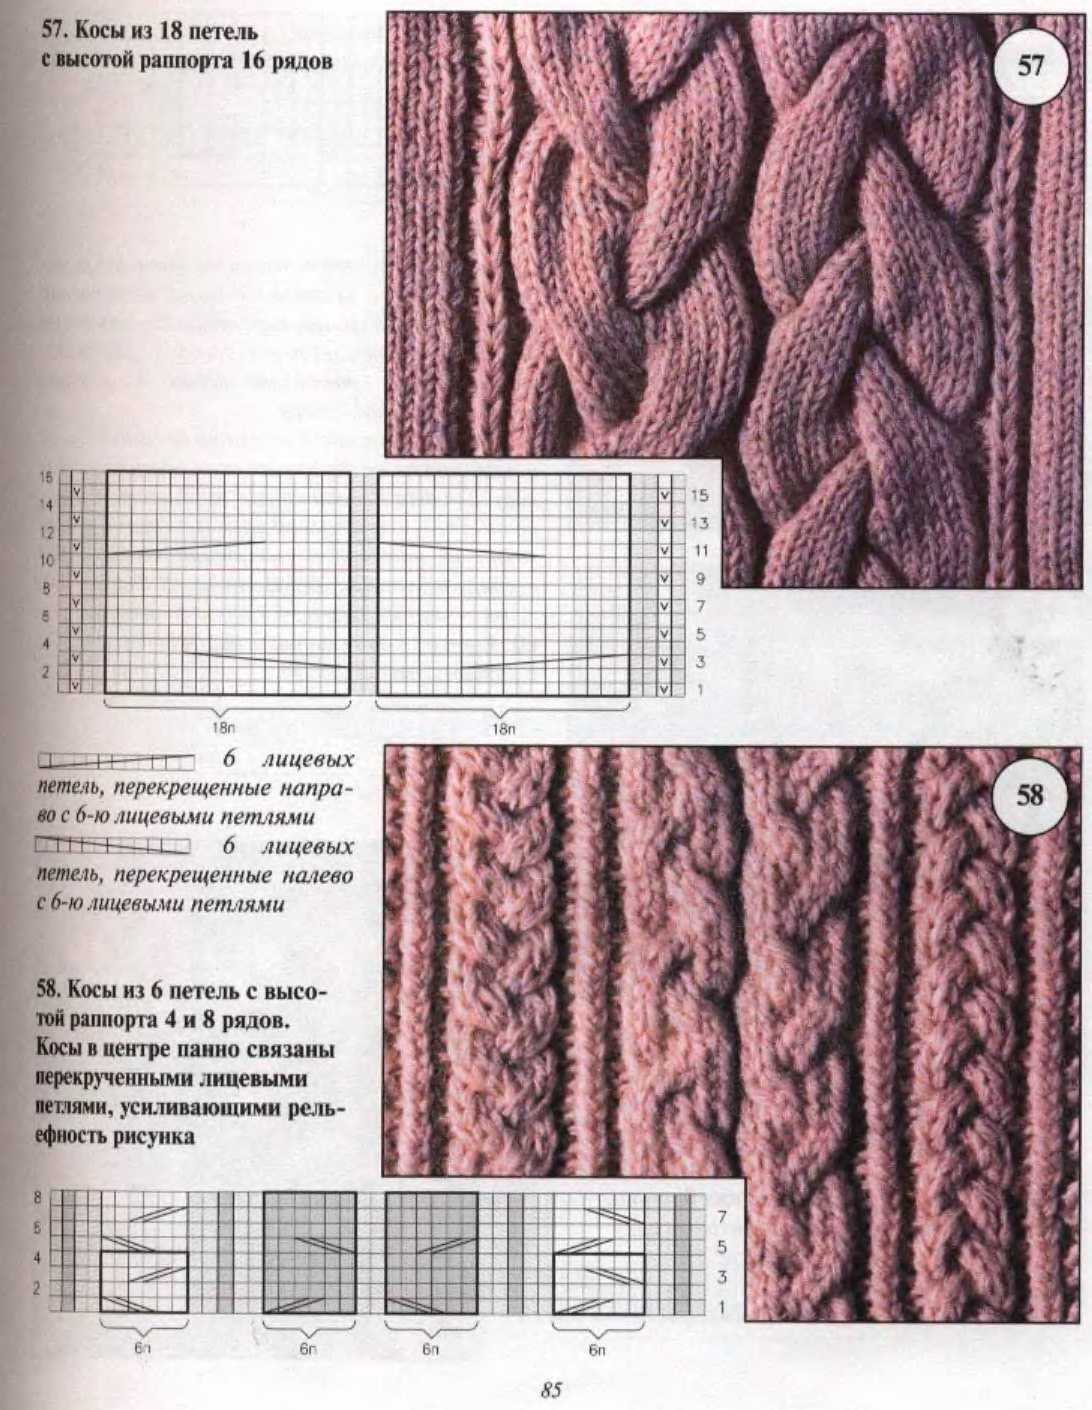 Вязание плотных узоров спицами - описание схем вязания для начинающих